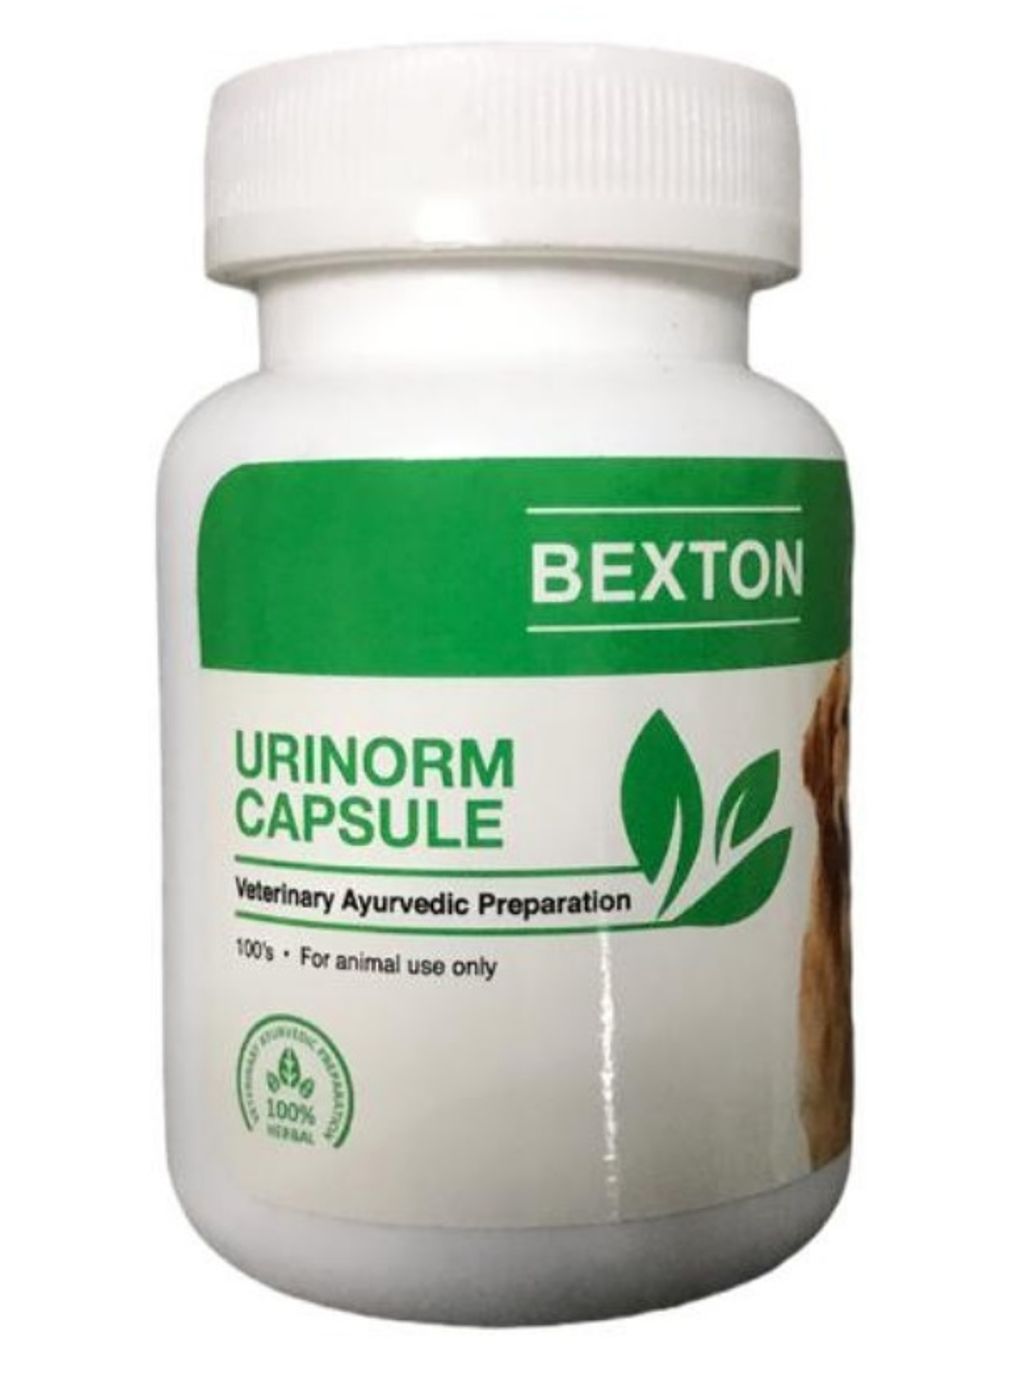 Urinorm capsule 2